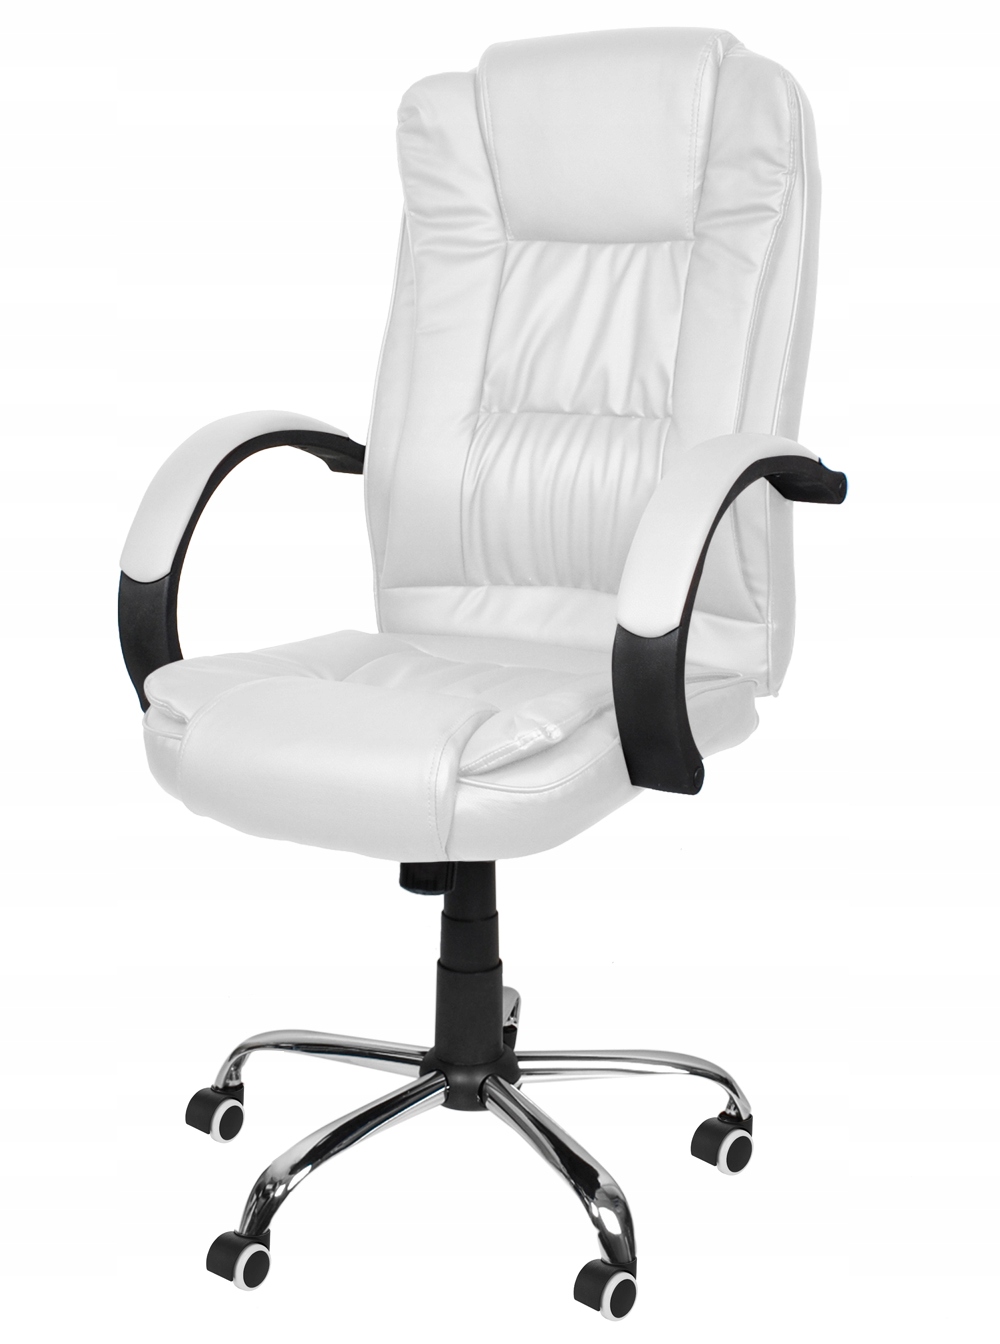 Колесики для офисных стульев 5шт PU Fi 11мм Strong Brand Malatec